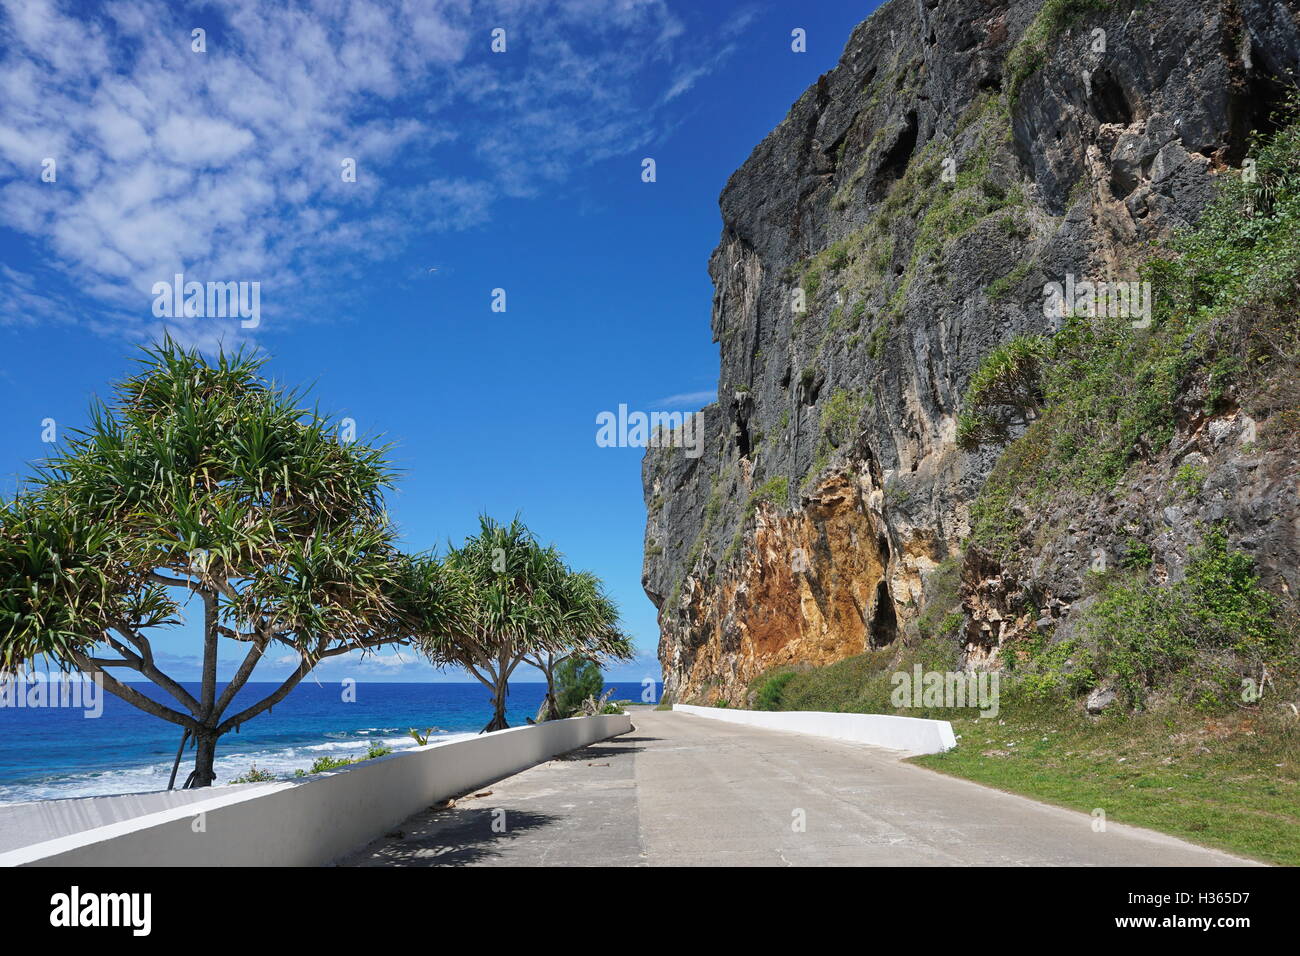 Falaise calcaire érodé le long de la route côtière de l'île de Rurutu, l'océan Pacifique, l'archipel des Australes, Polynésie Française Banque D'Images